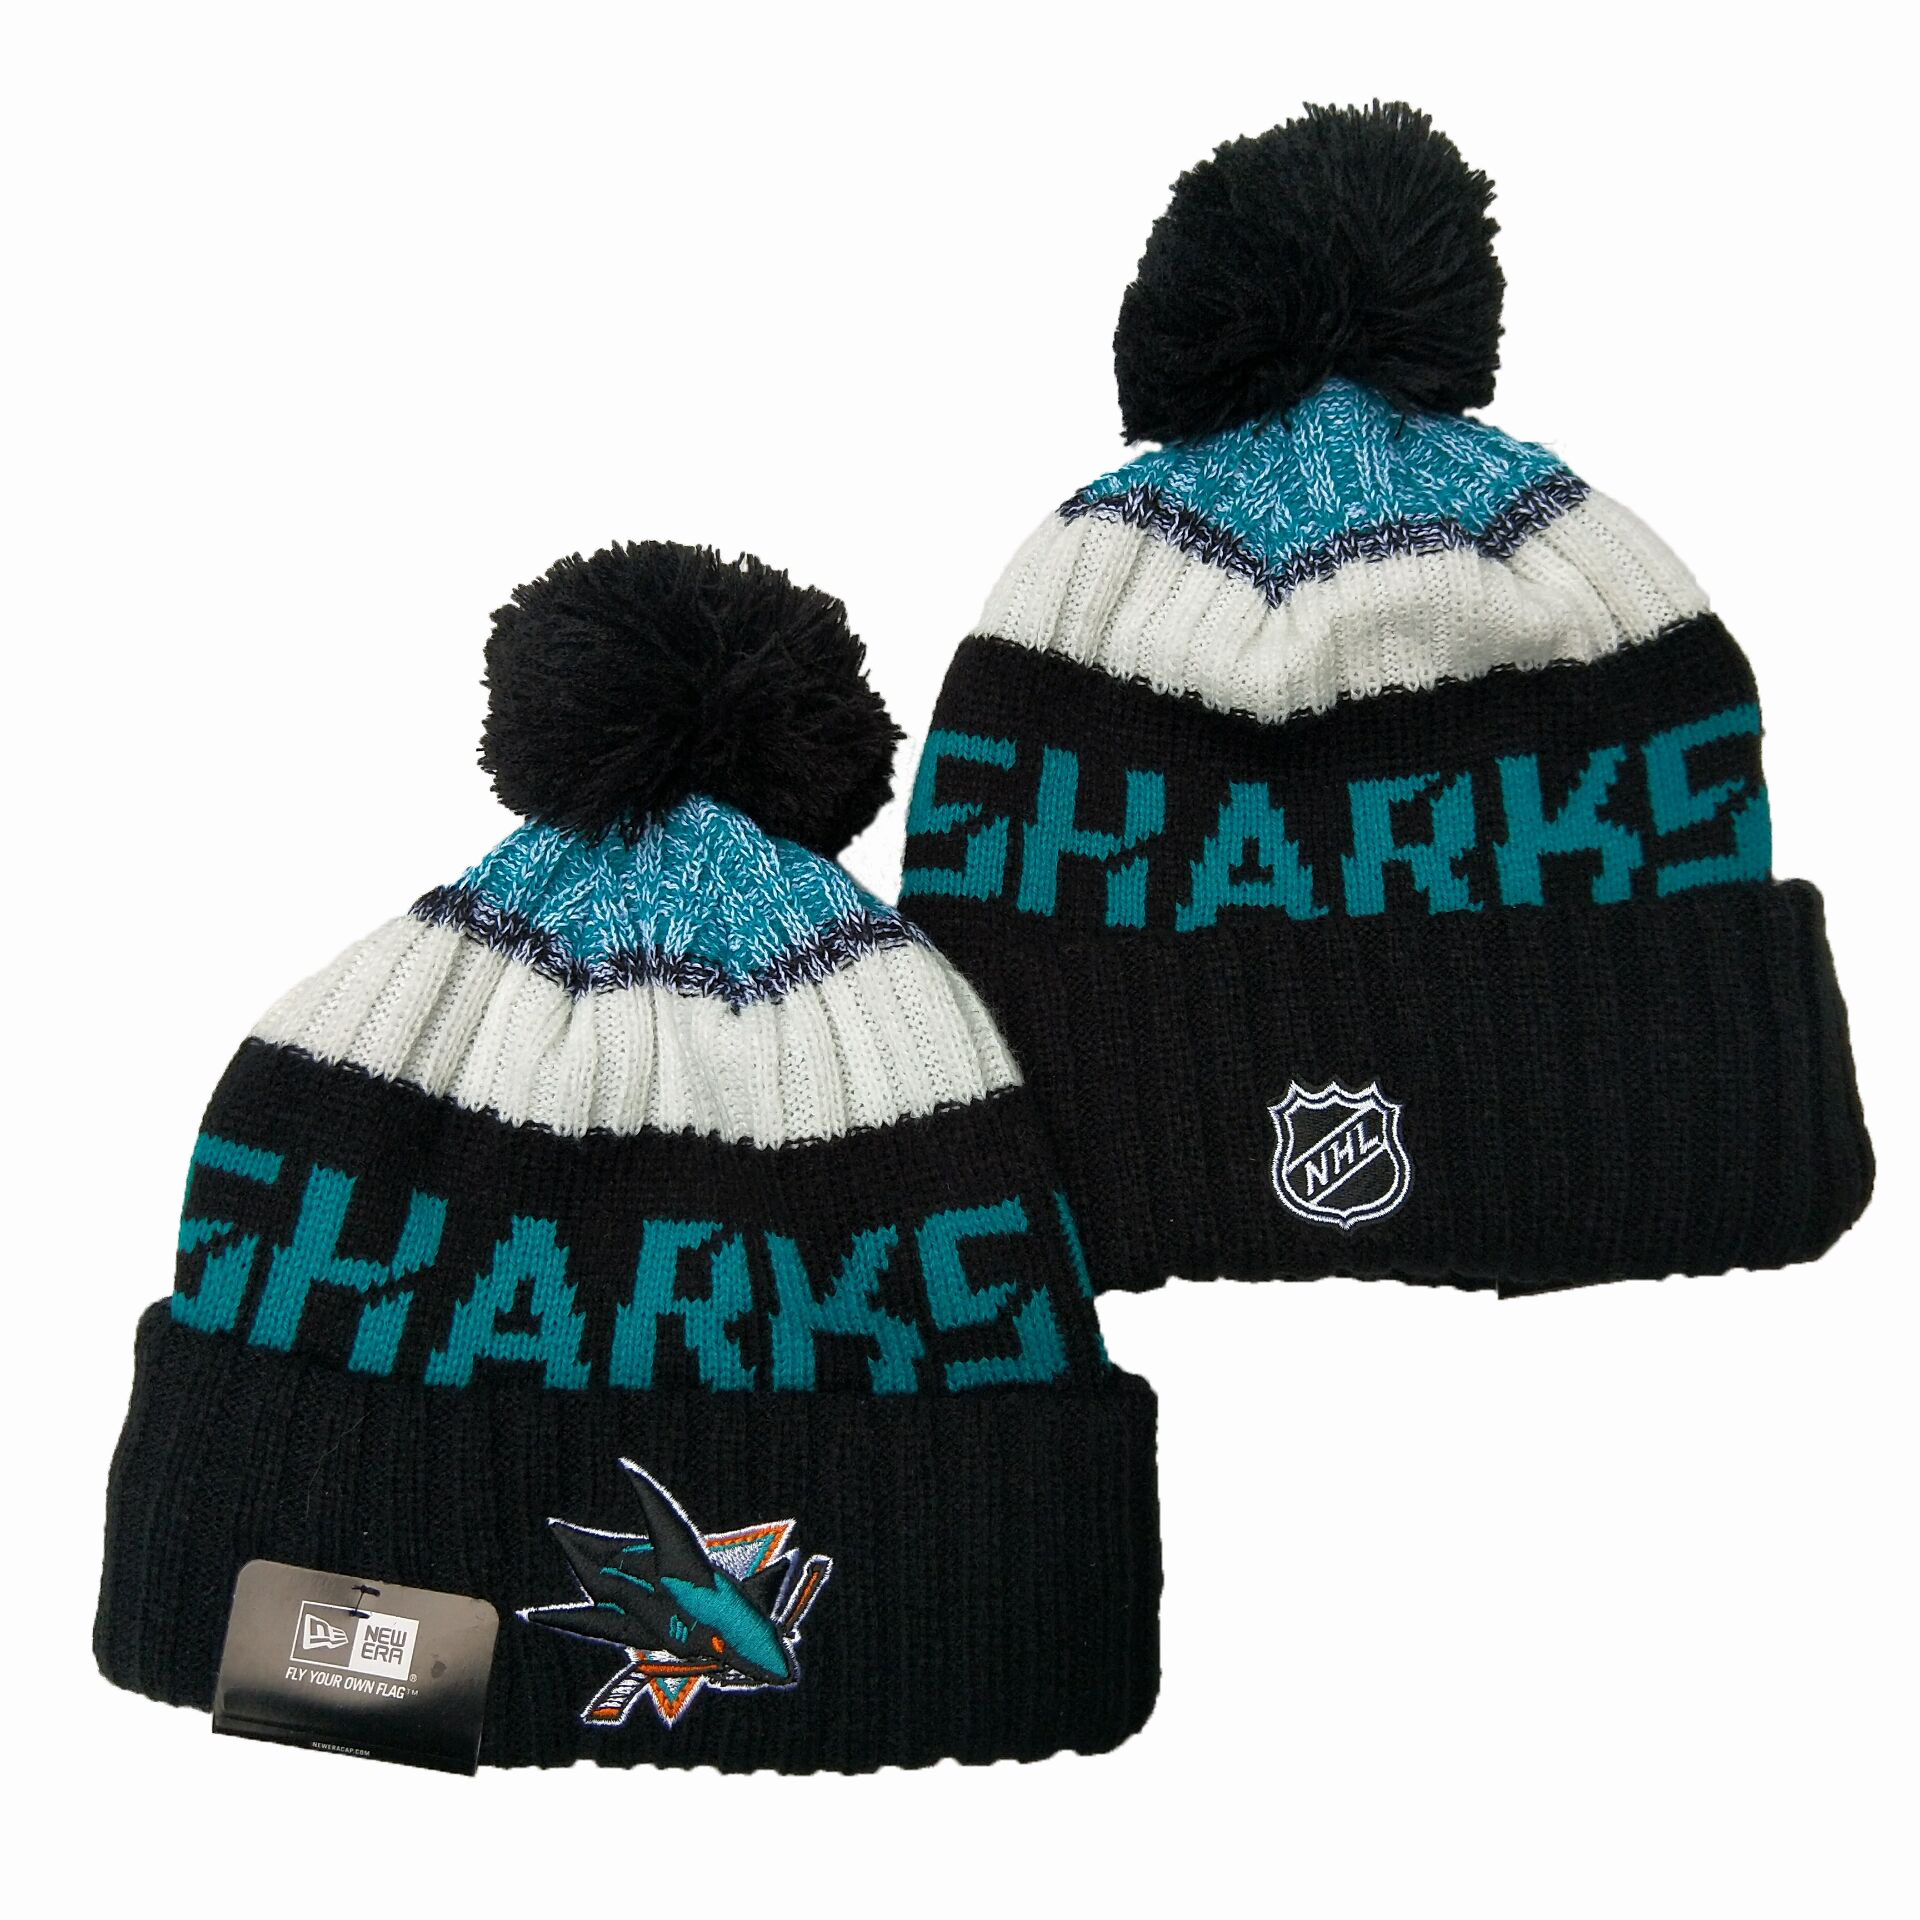 San Jose Sharks Knit Hats -2